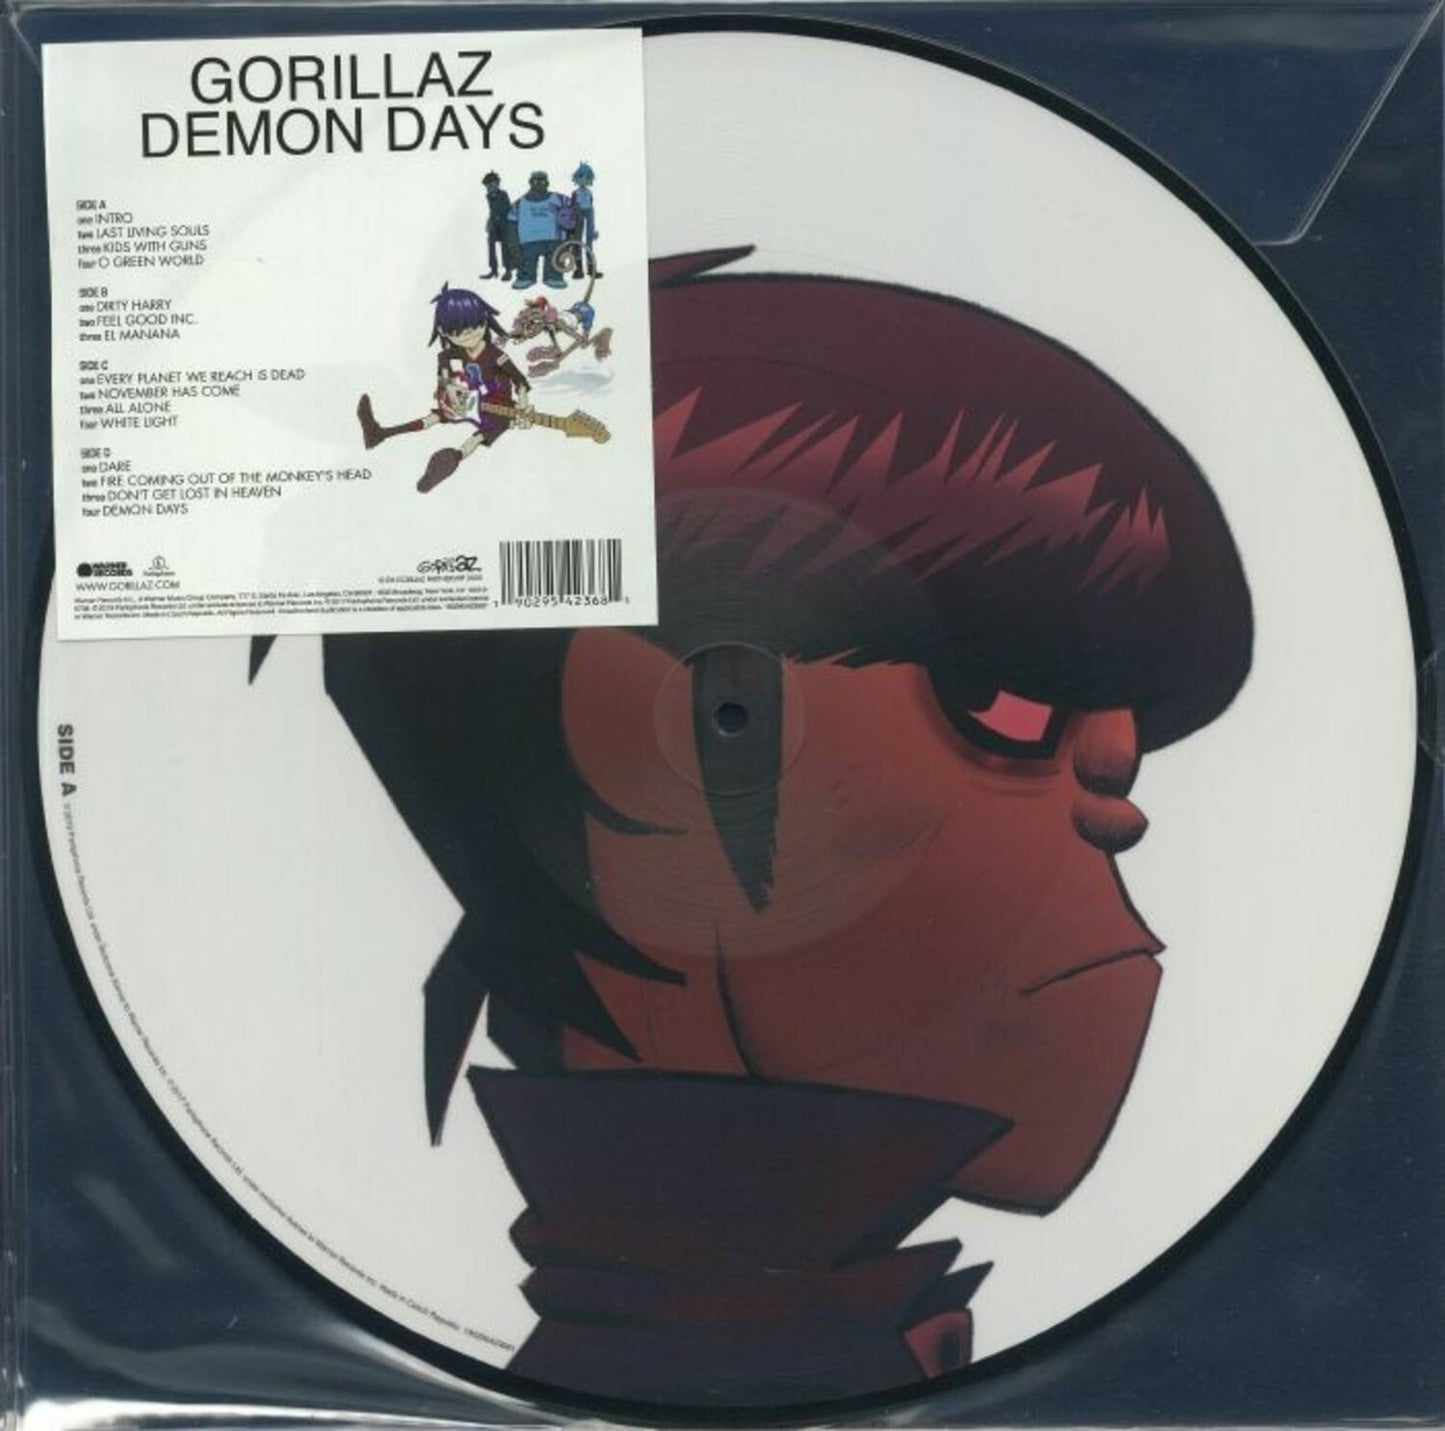 Gorillaz - "Demon Days"